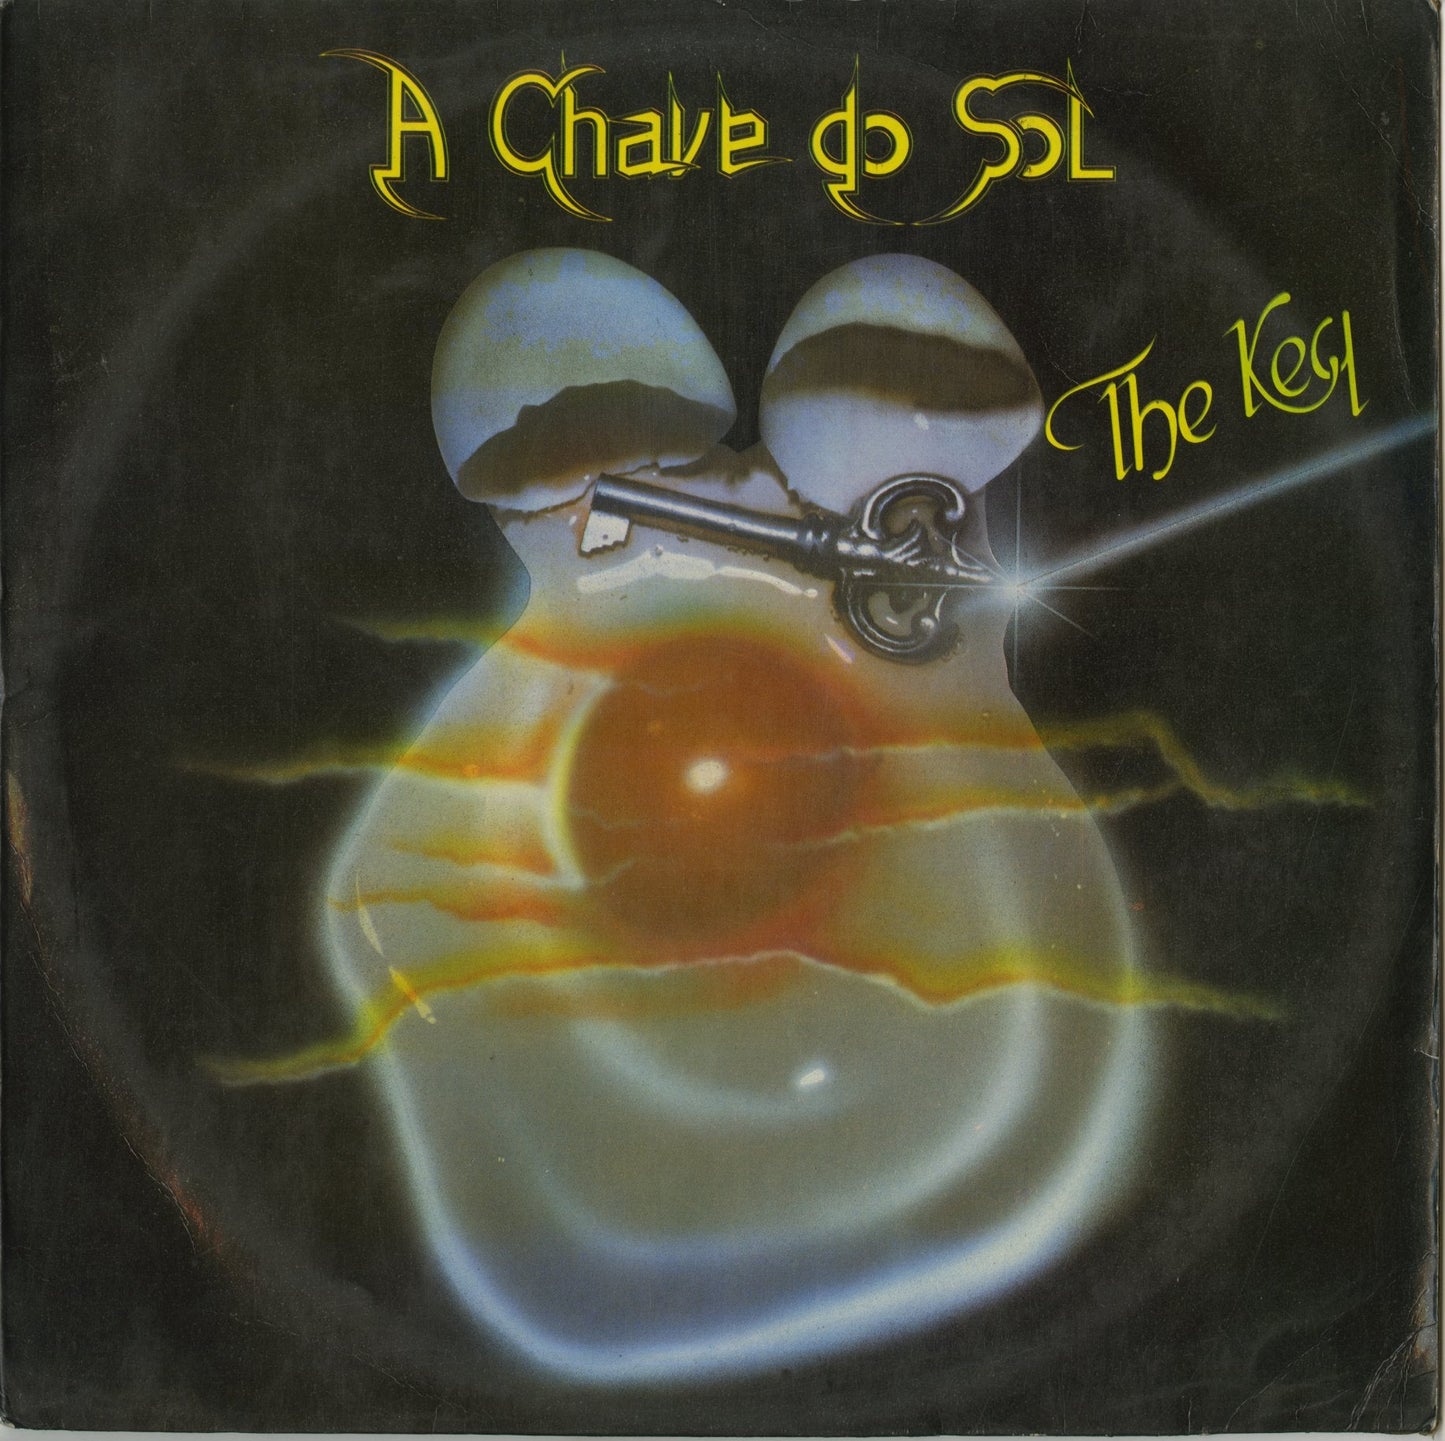 A Chave De Sol / The Key (RBR160 87) VOXMUSIC WEBSHOP